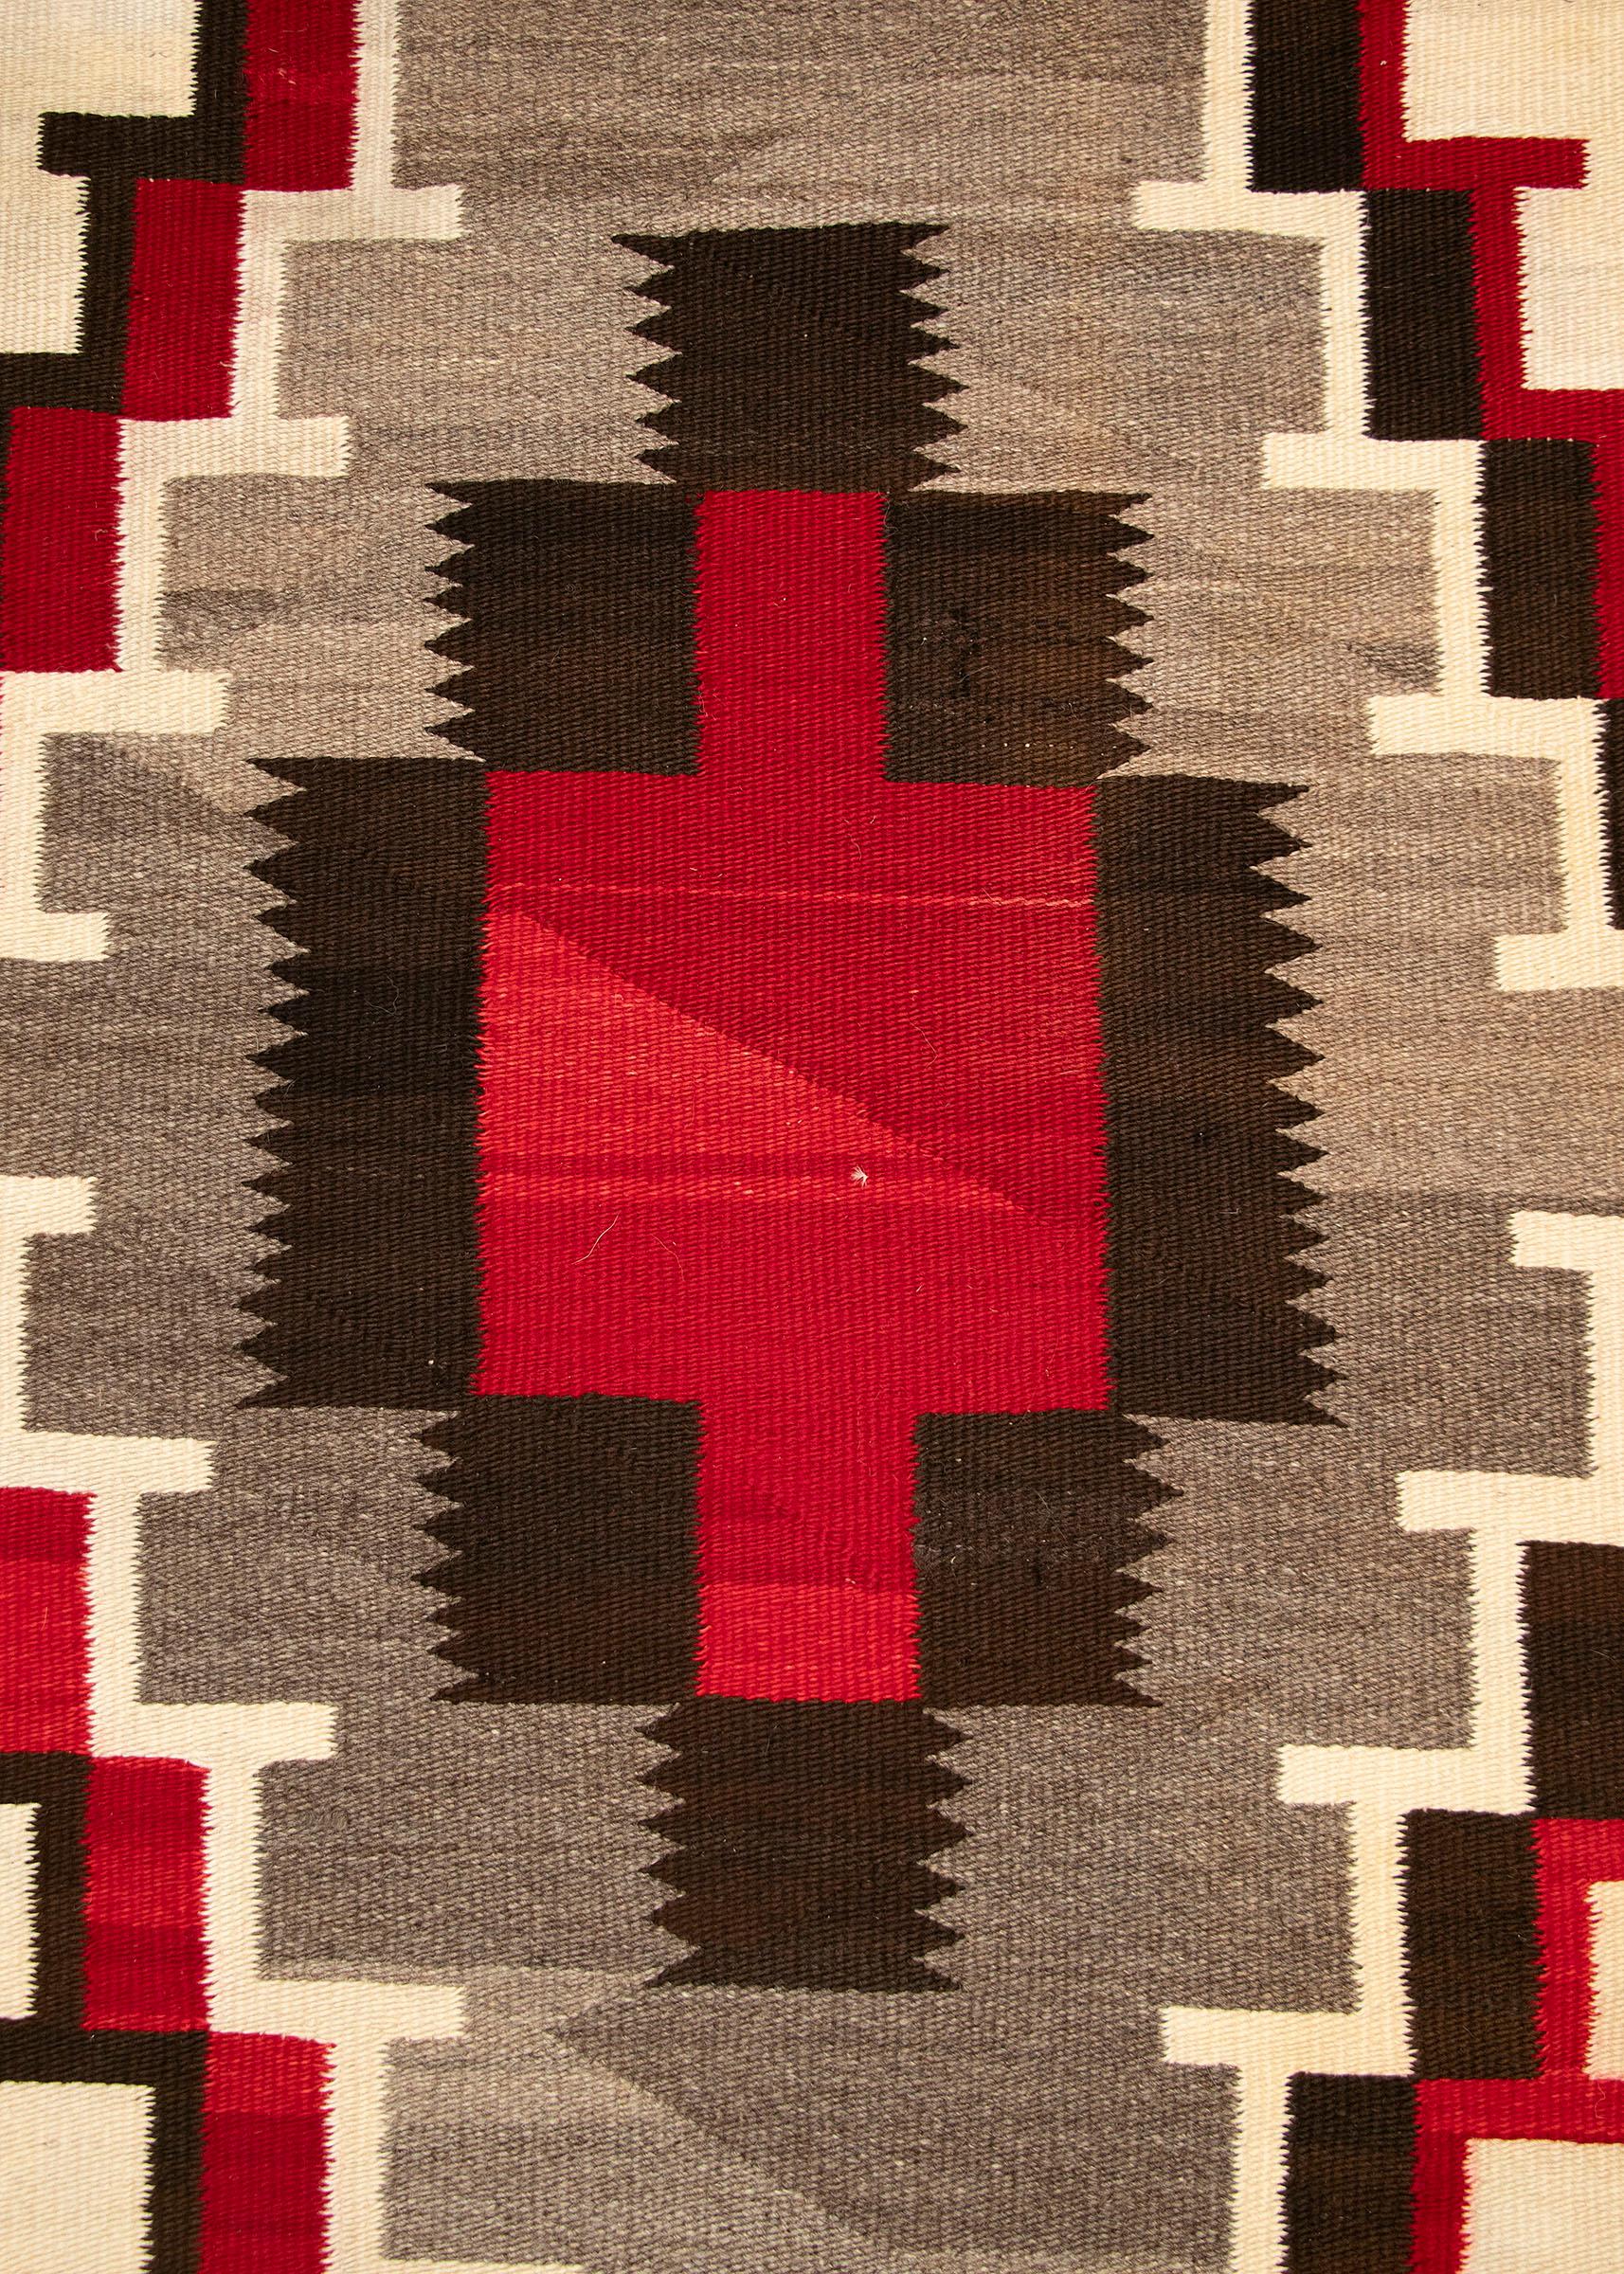 Wool Vintage Navajo Area Rug, Circa 1930 Ganado Trading Post, Ecru Red Gray Brown For Sale